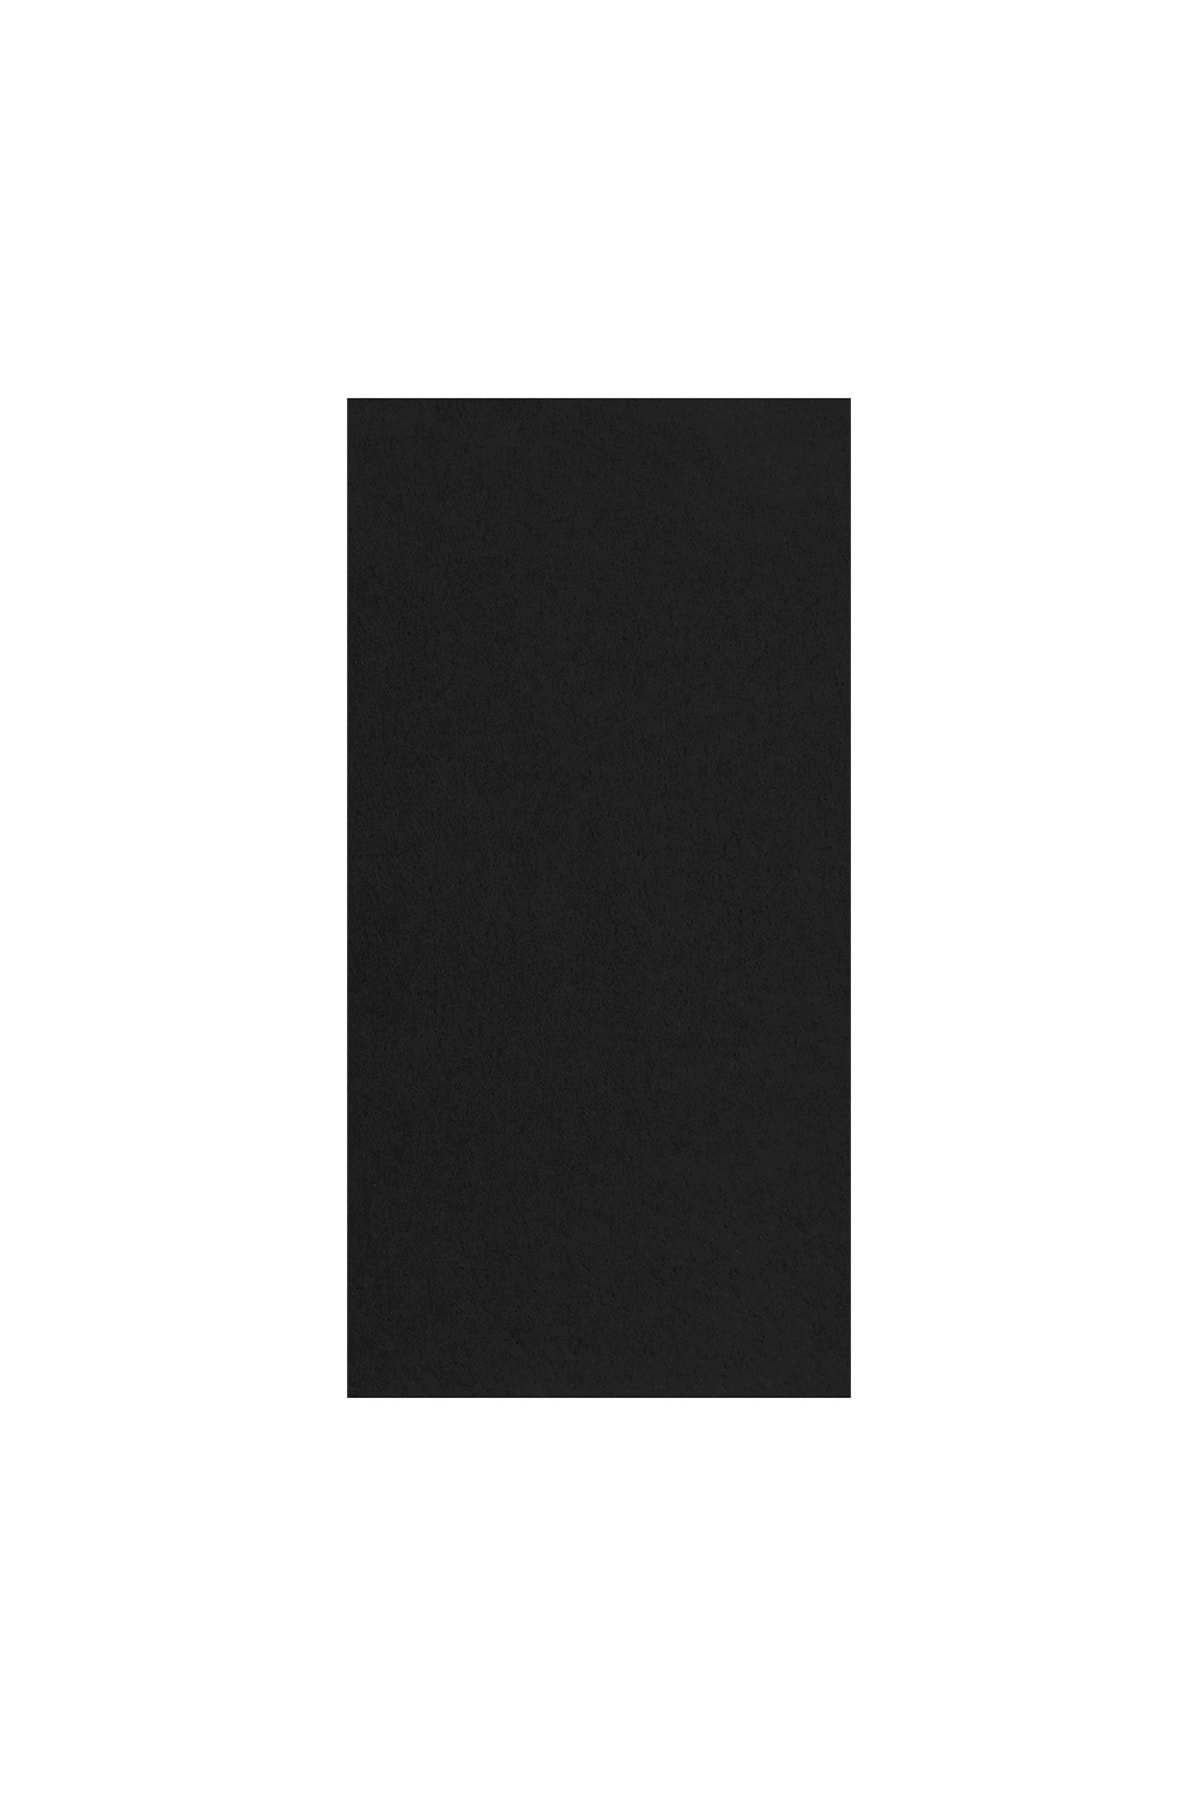 Story 33x33 Cm 2 Katlı 20'li 1/8 Katlama Antrasit Siyah Renkli Kağıt Peçete